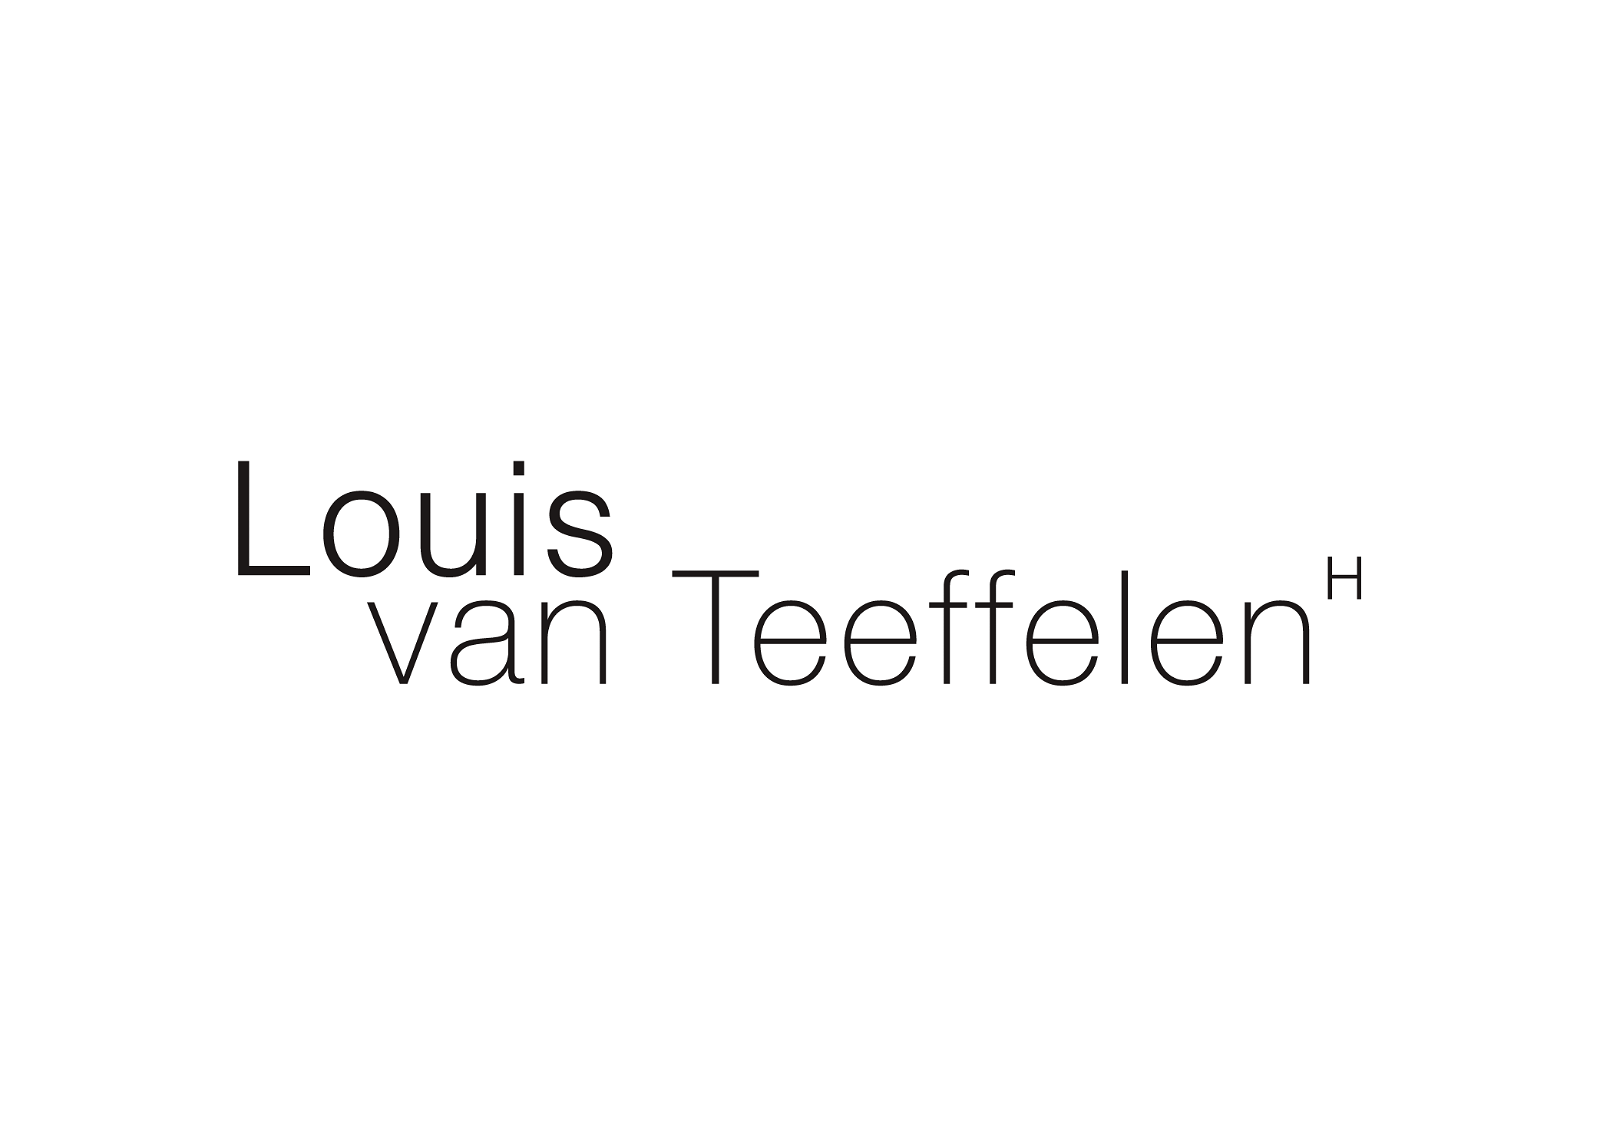 Louis van Teeffelen